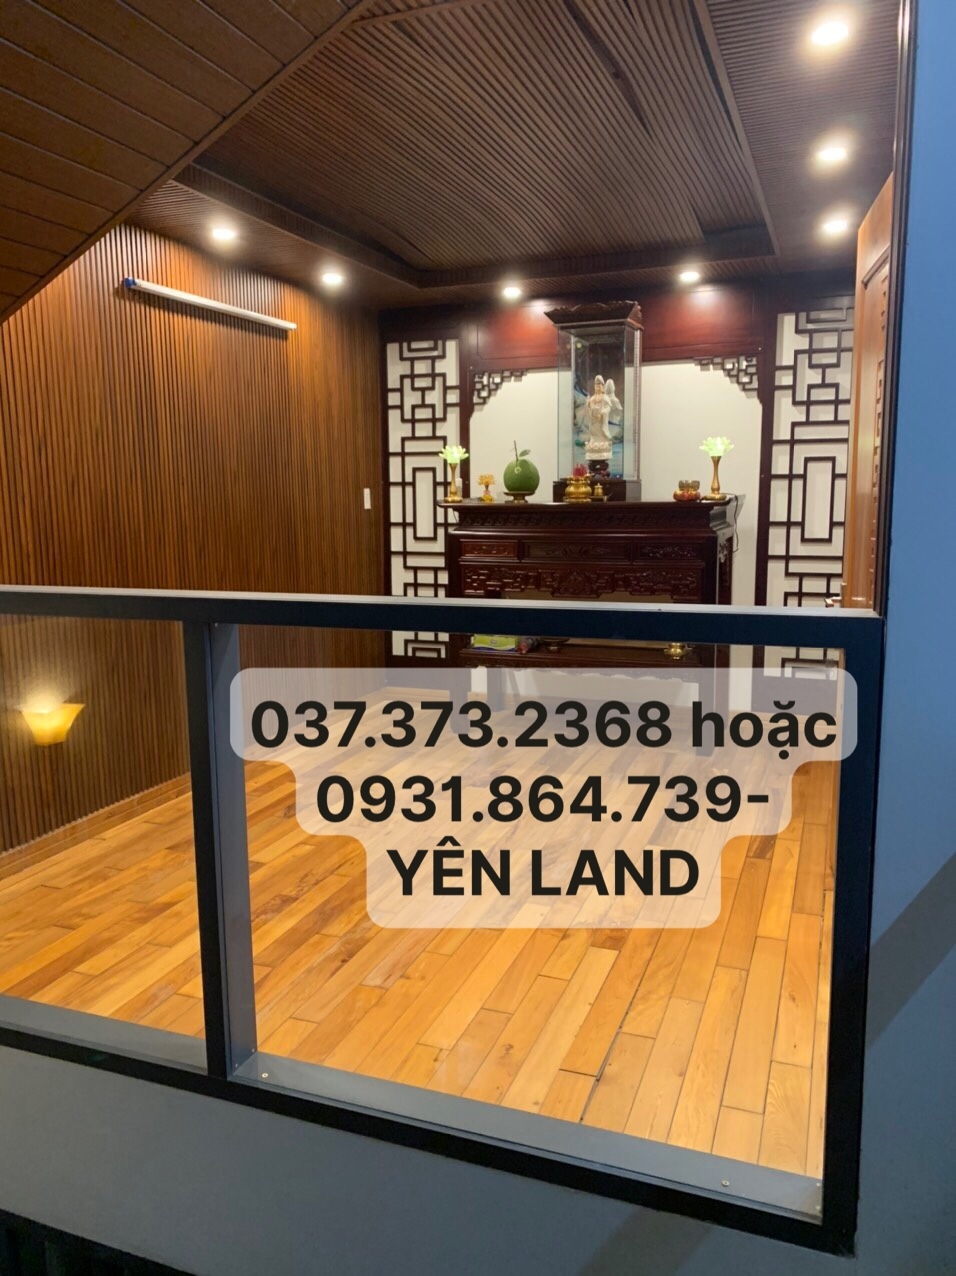 Giảm giá bán nhanh nhà đẹp nội thất gỗ gần ĐỐNG ĐA - Hải Châu 234m2 chỉ còn nhỉnh 5 tỷ 0373732368